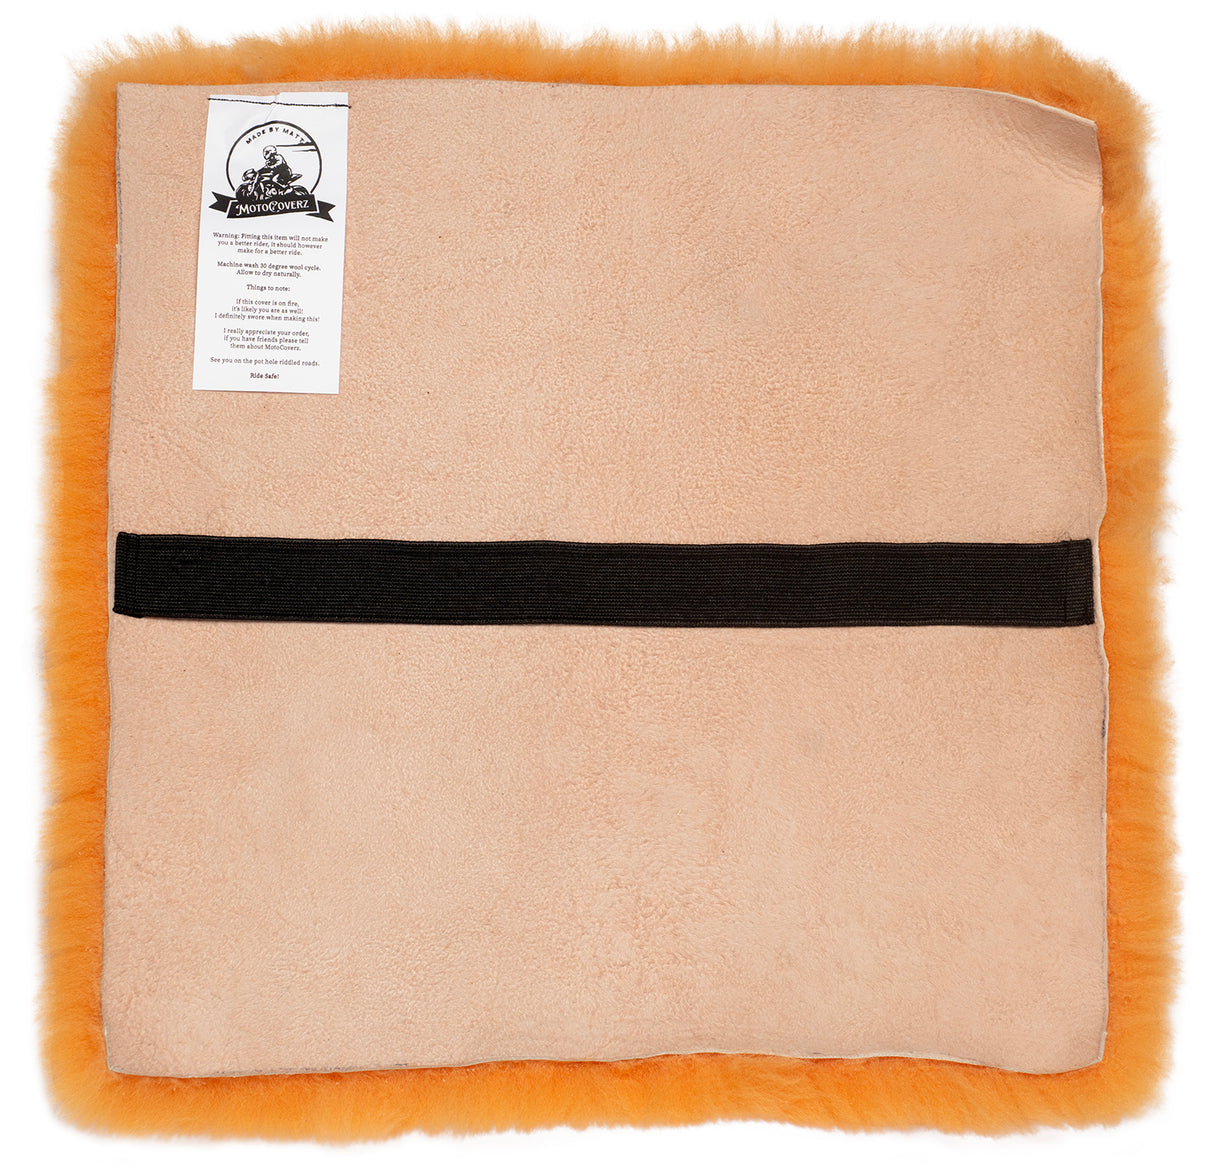 Mandarin Merino Short Wool Sheepskin Seat Cover